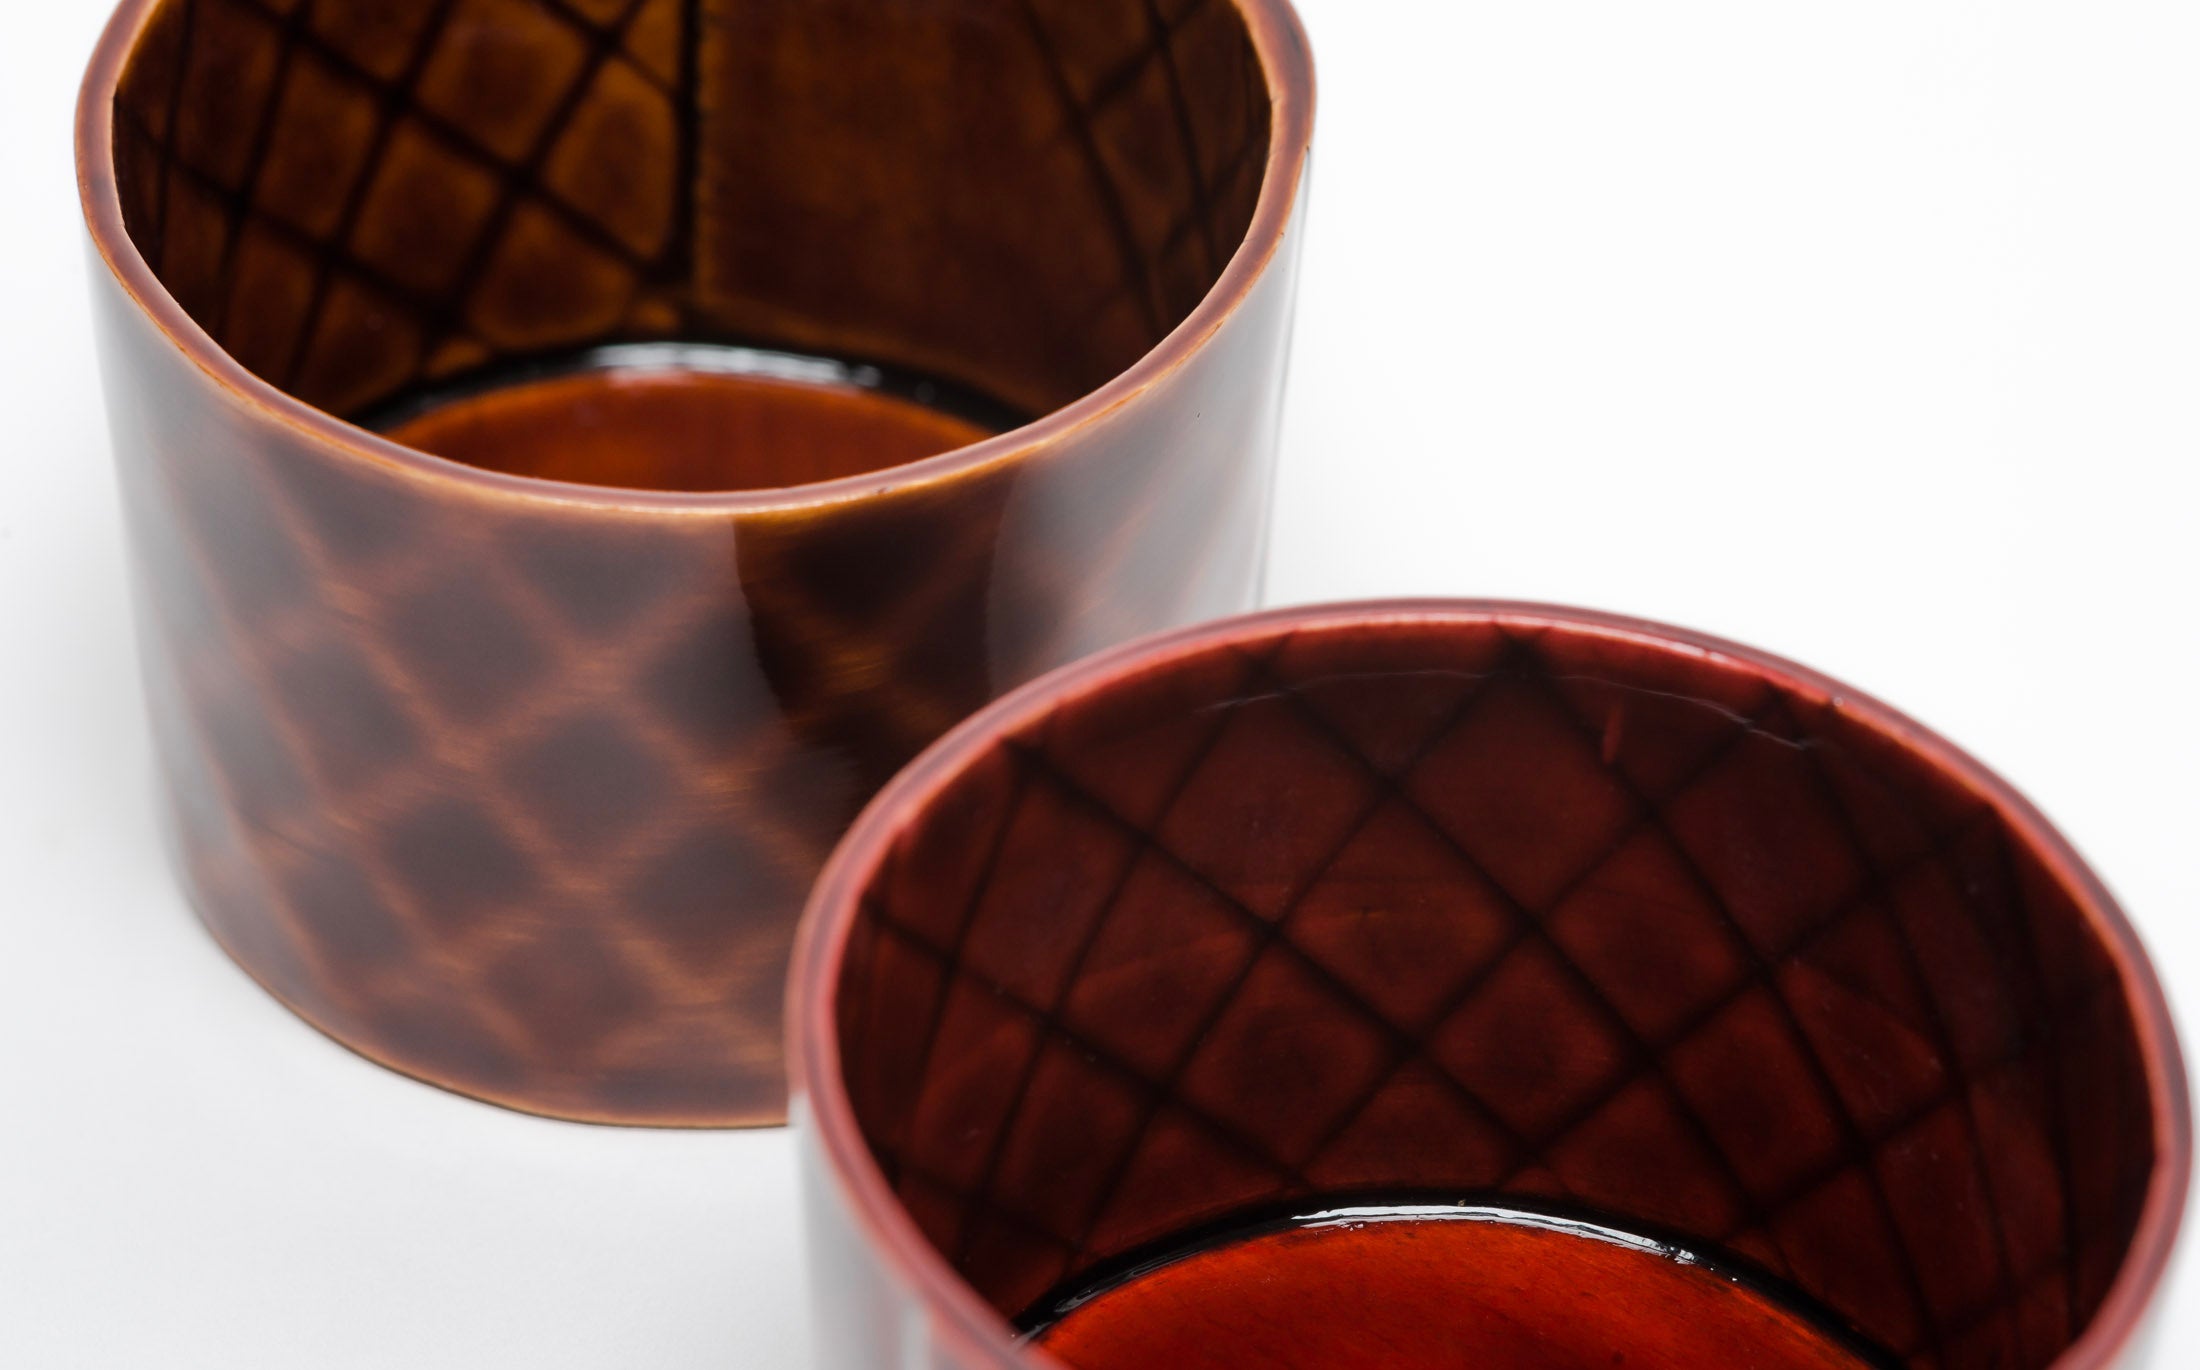 Omae - Sake Cup Woven-Bamboo Pattern